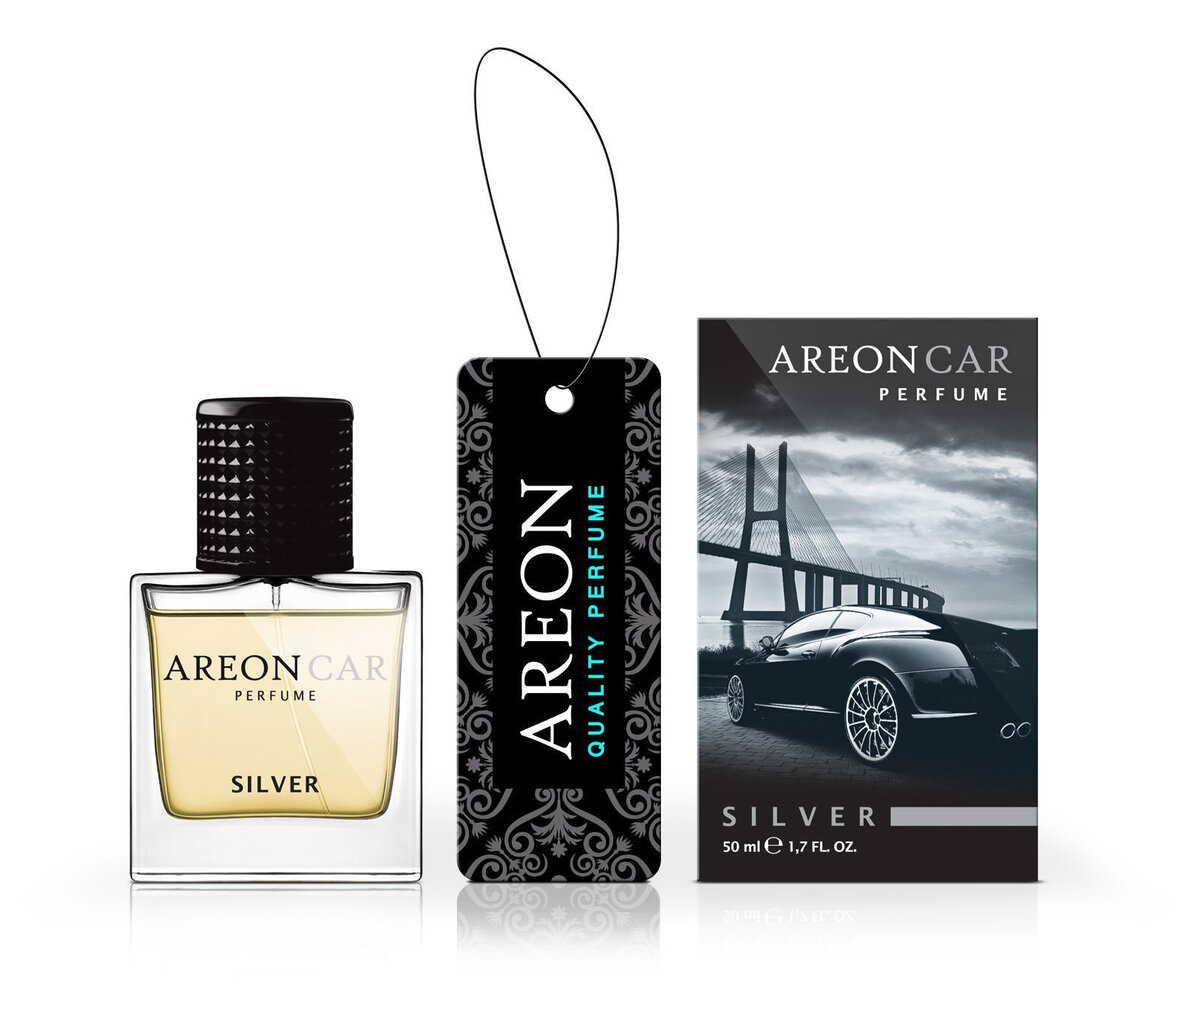 Oro gaiviklis Areon Car Perfume 50ml - Silver kaina ir informacija | Salono oro gaivikliai | pigu.lt